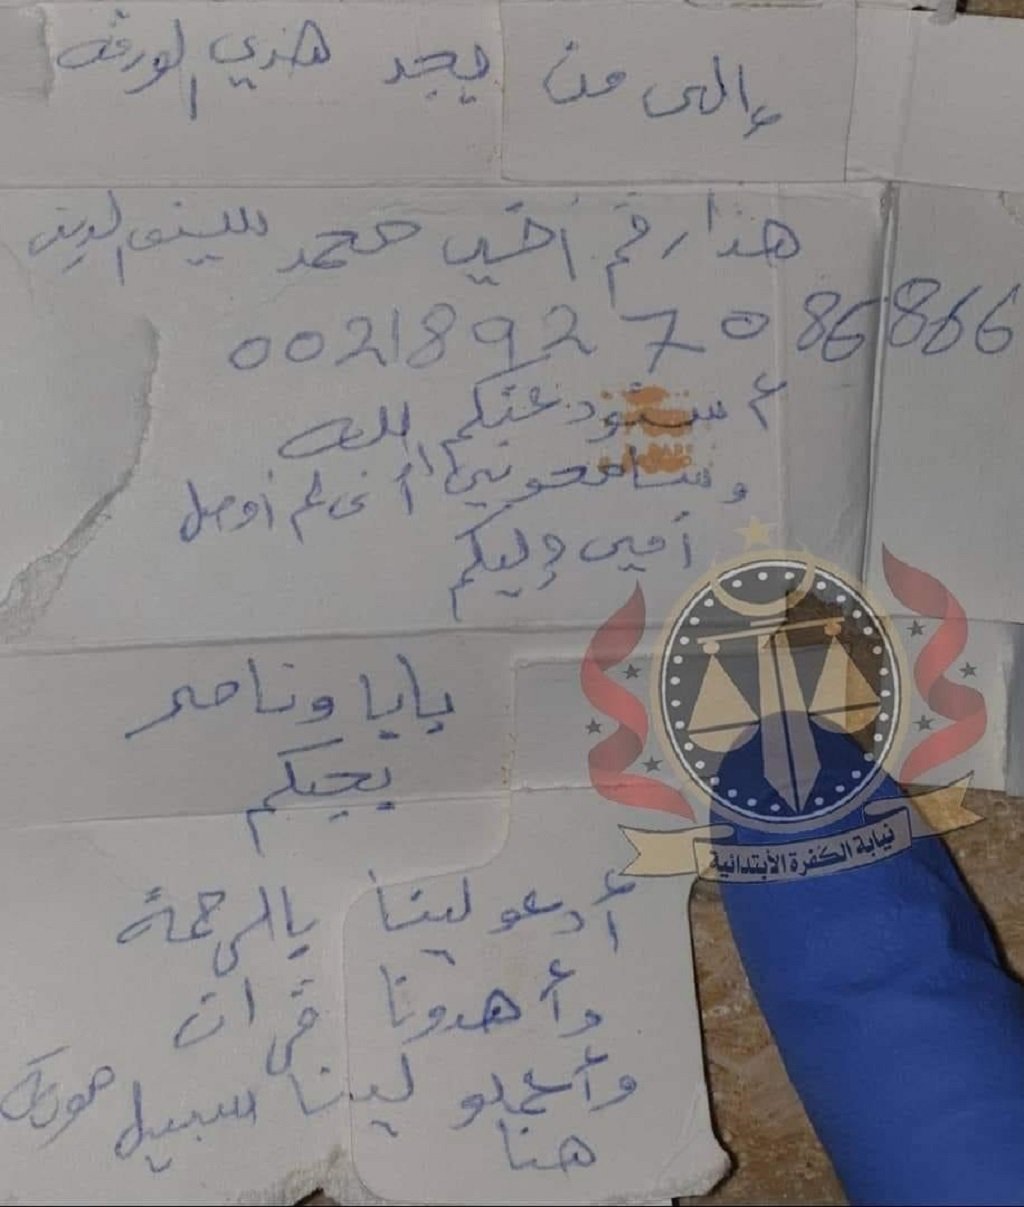 نص الرسالة التي وجدتها الشرطة الليبية في سيارة العائلة المنكوبة